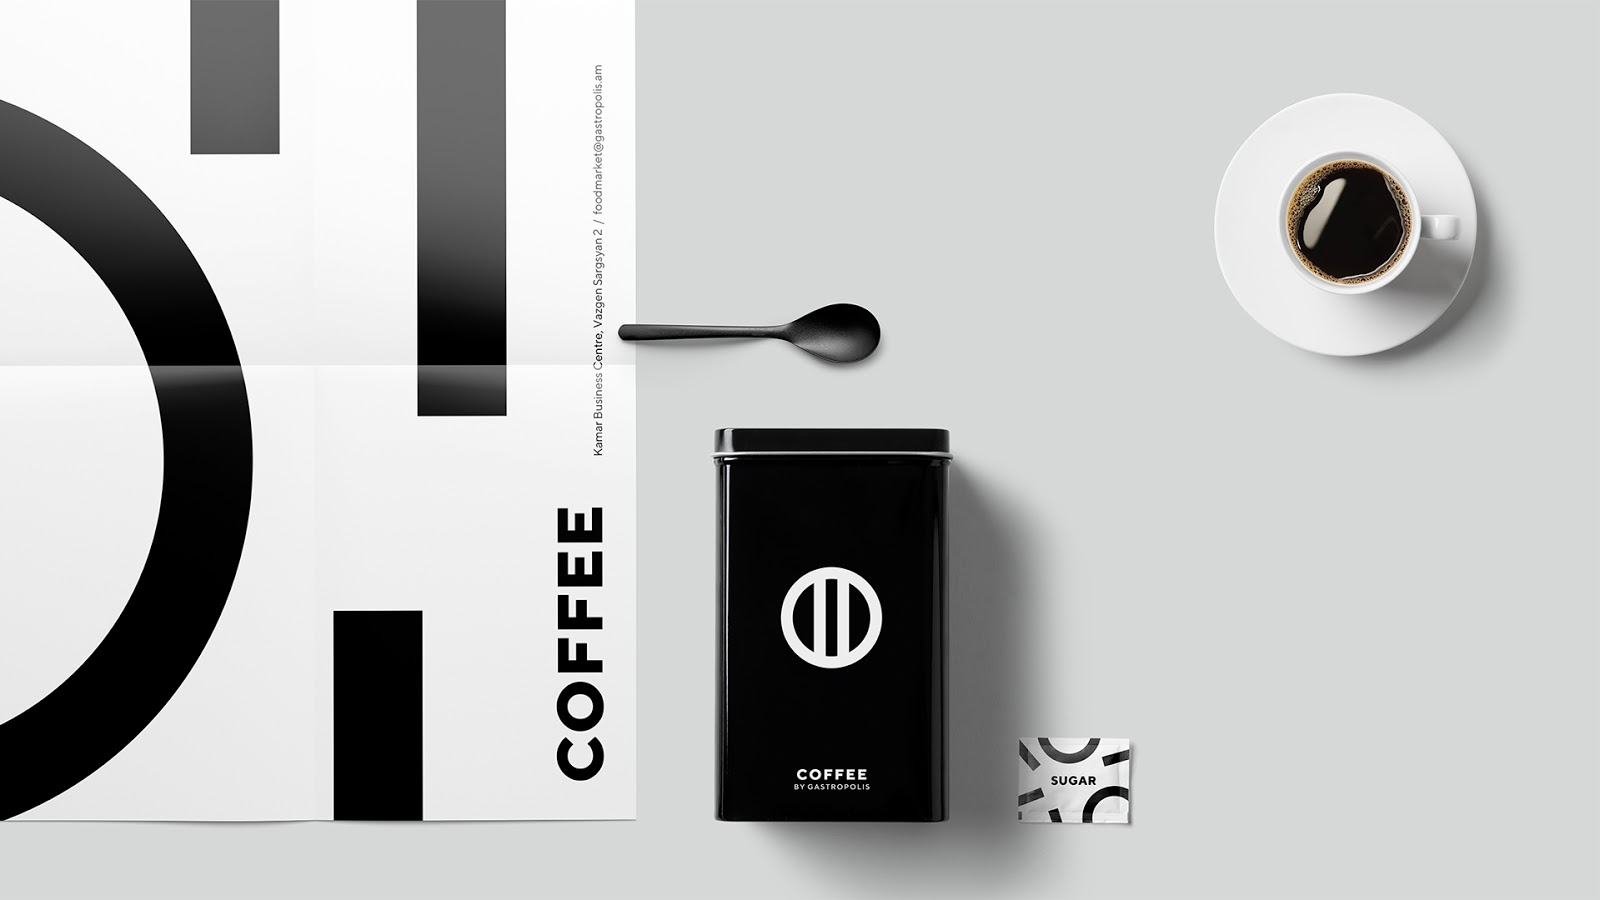 快餐简餐甜品面包咖啡西安四喜品牌策划包装设计VI设计logo设计